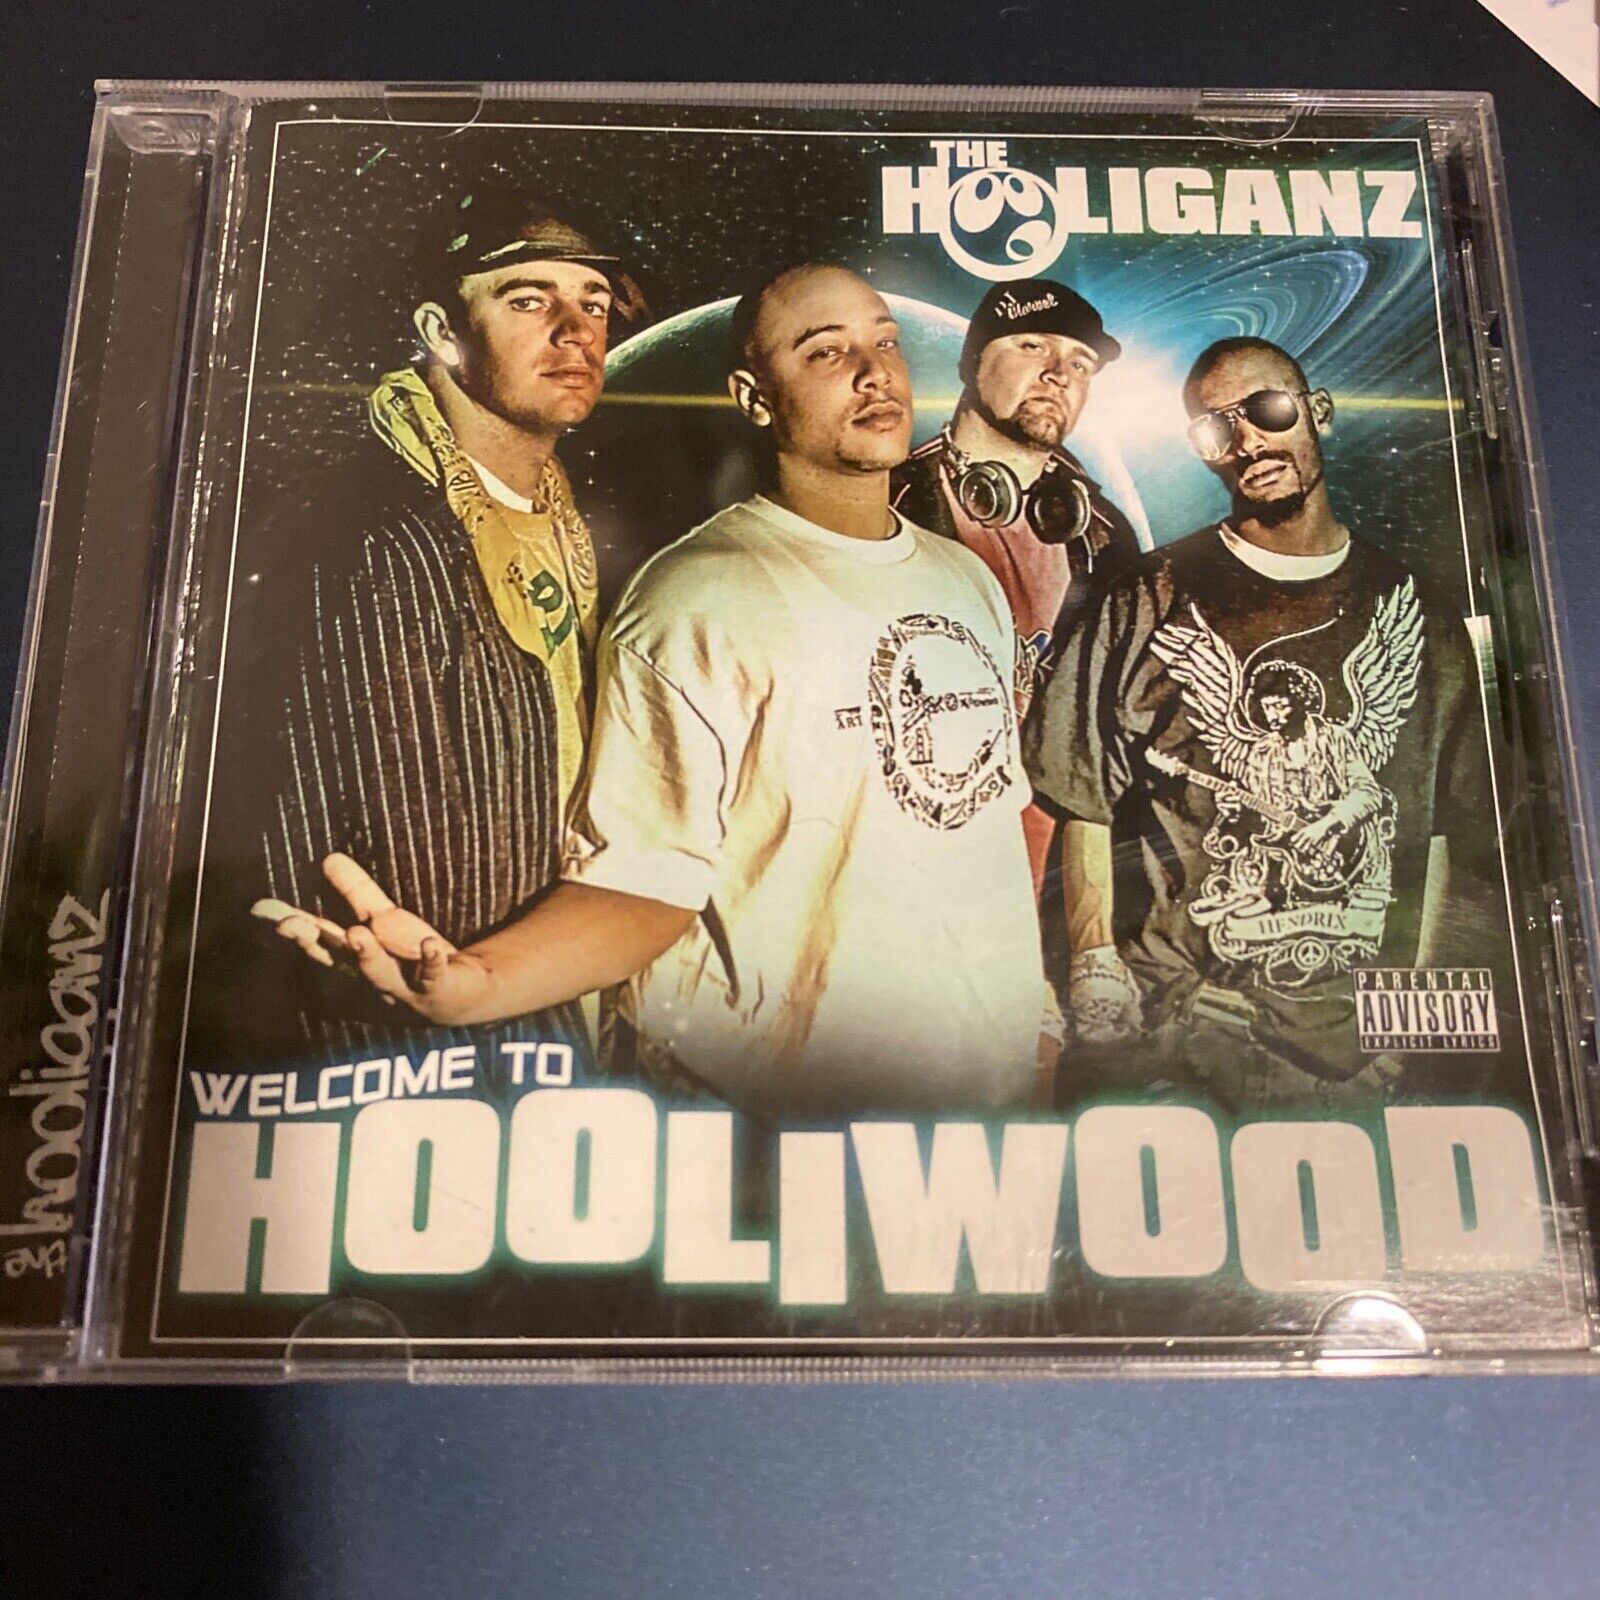 hooliwood hooliganz 2006 Chico California ~ VERY RARE OOP DEMO PROMO UNRELEASED